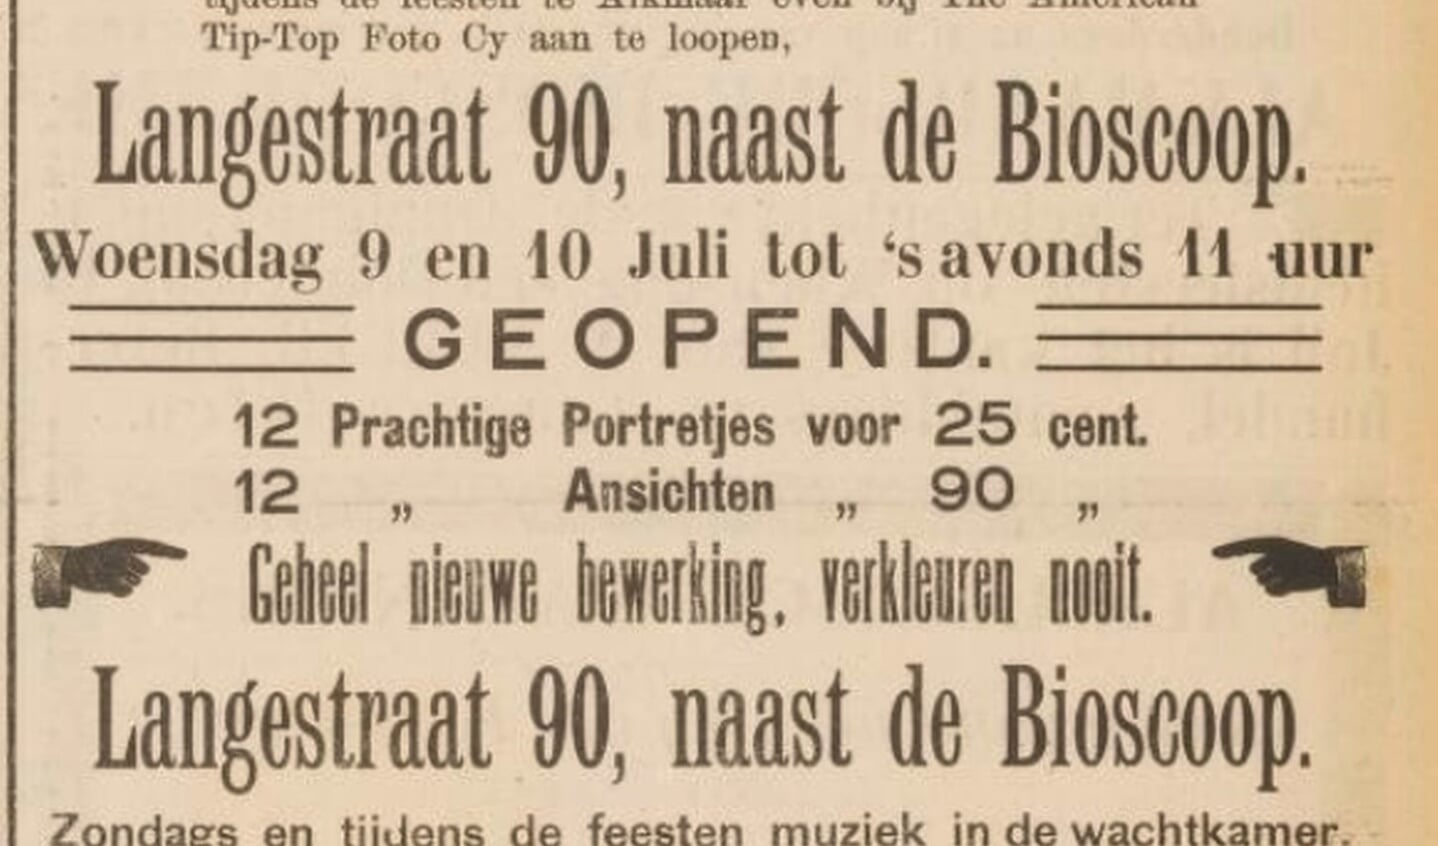 Advertentie voor fotostudio in Alkmaar in 1913.